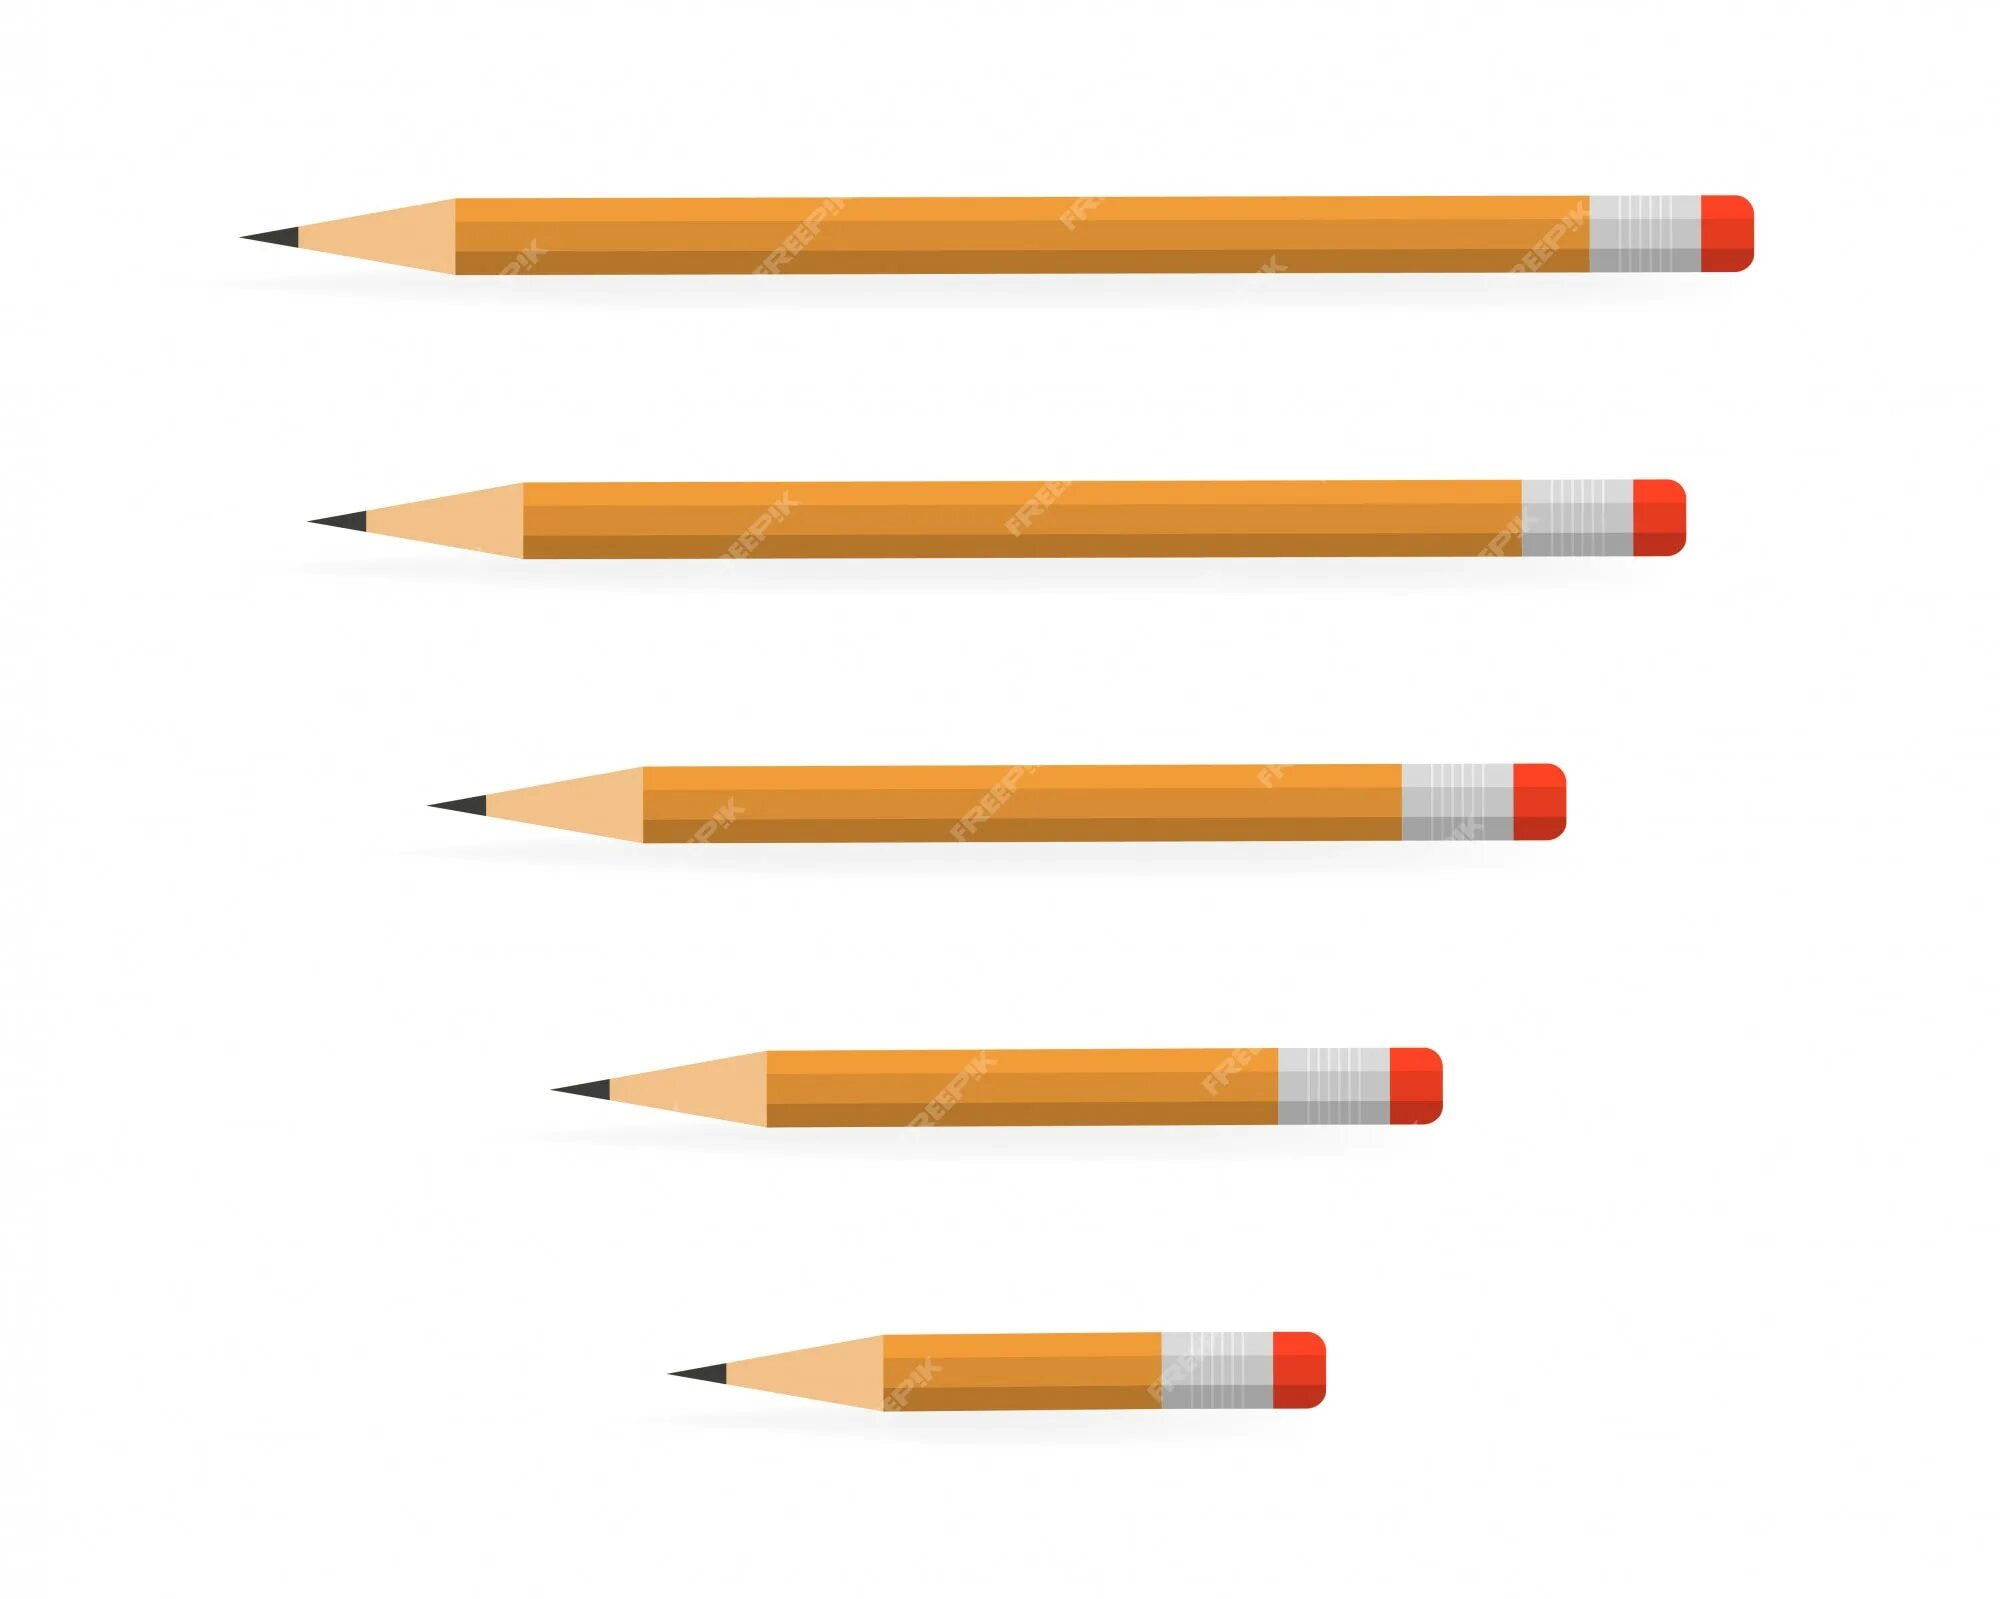 Какой длины карандаш. Длинный карандаш. Карандаши разной толщины. Длинный и короткий карандаш. Карандаш на белом фоне.